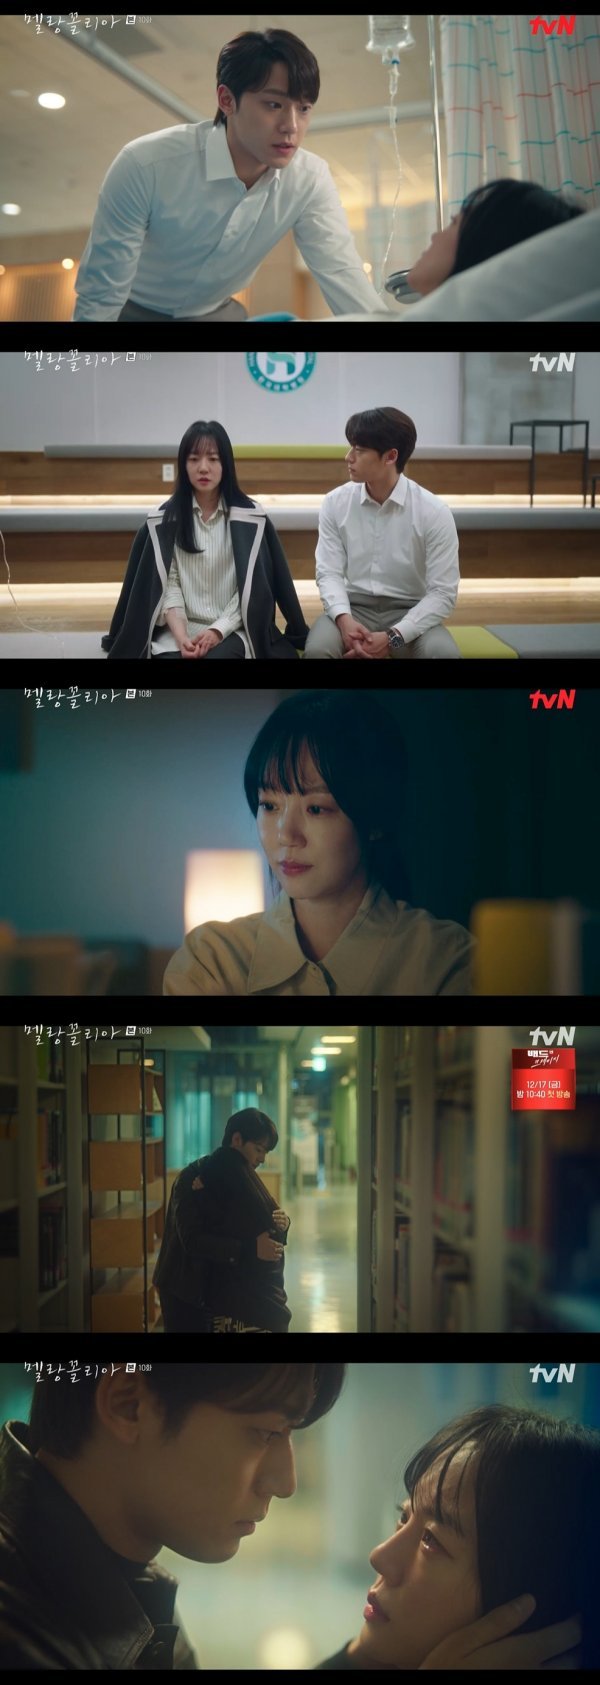 사진 제공: tvN 15주년 특별기획 수목드라마 <멜랑꼴리아> 영상 캡처